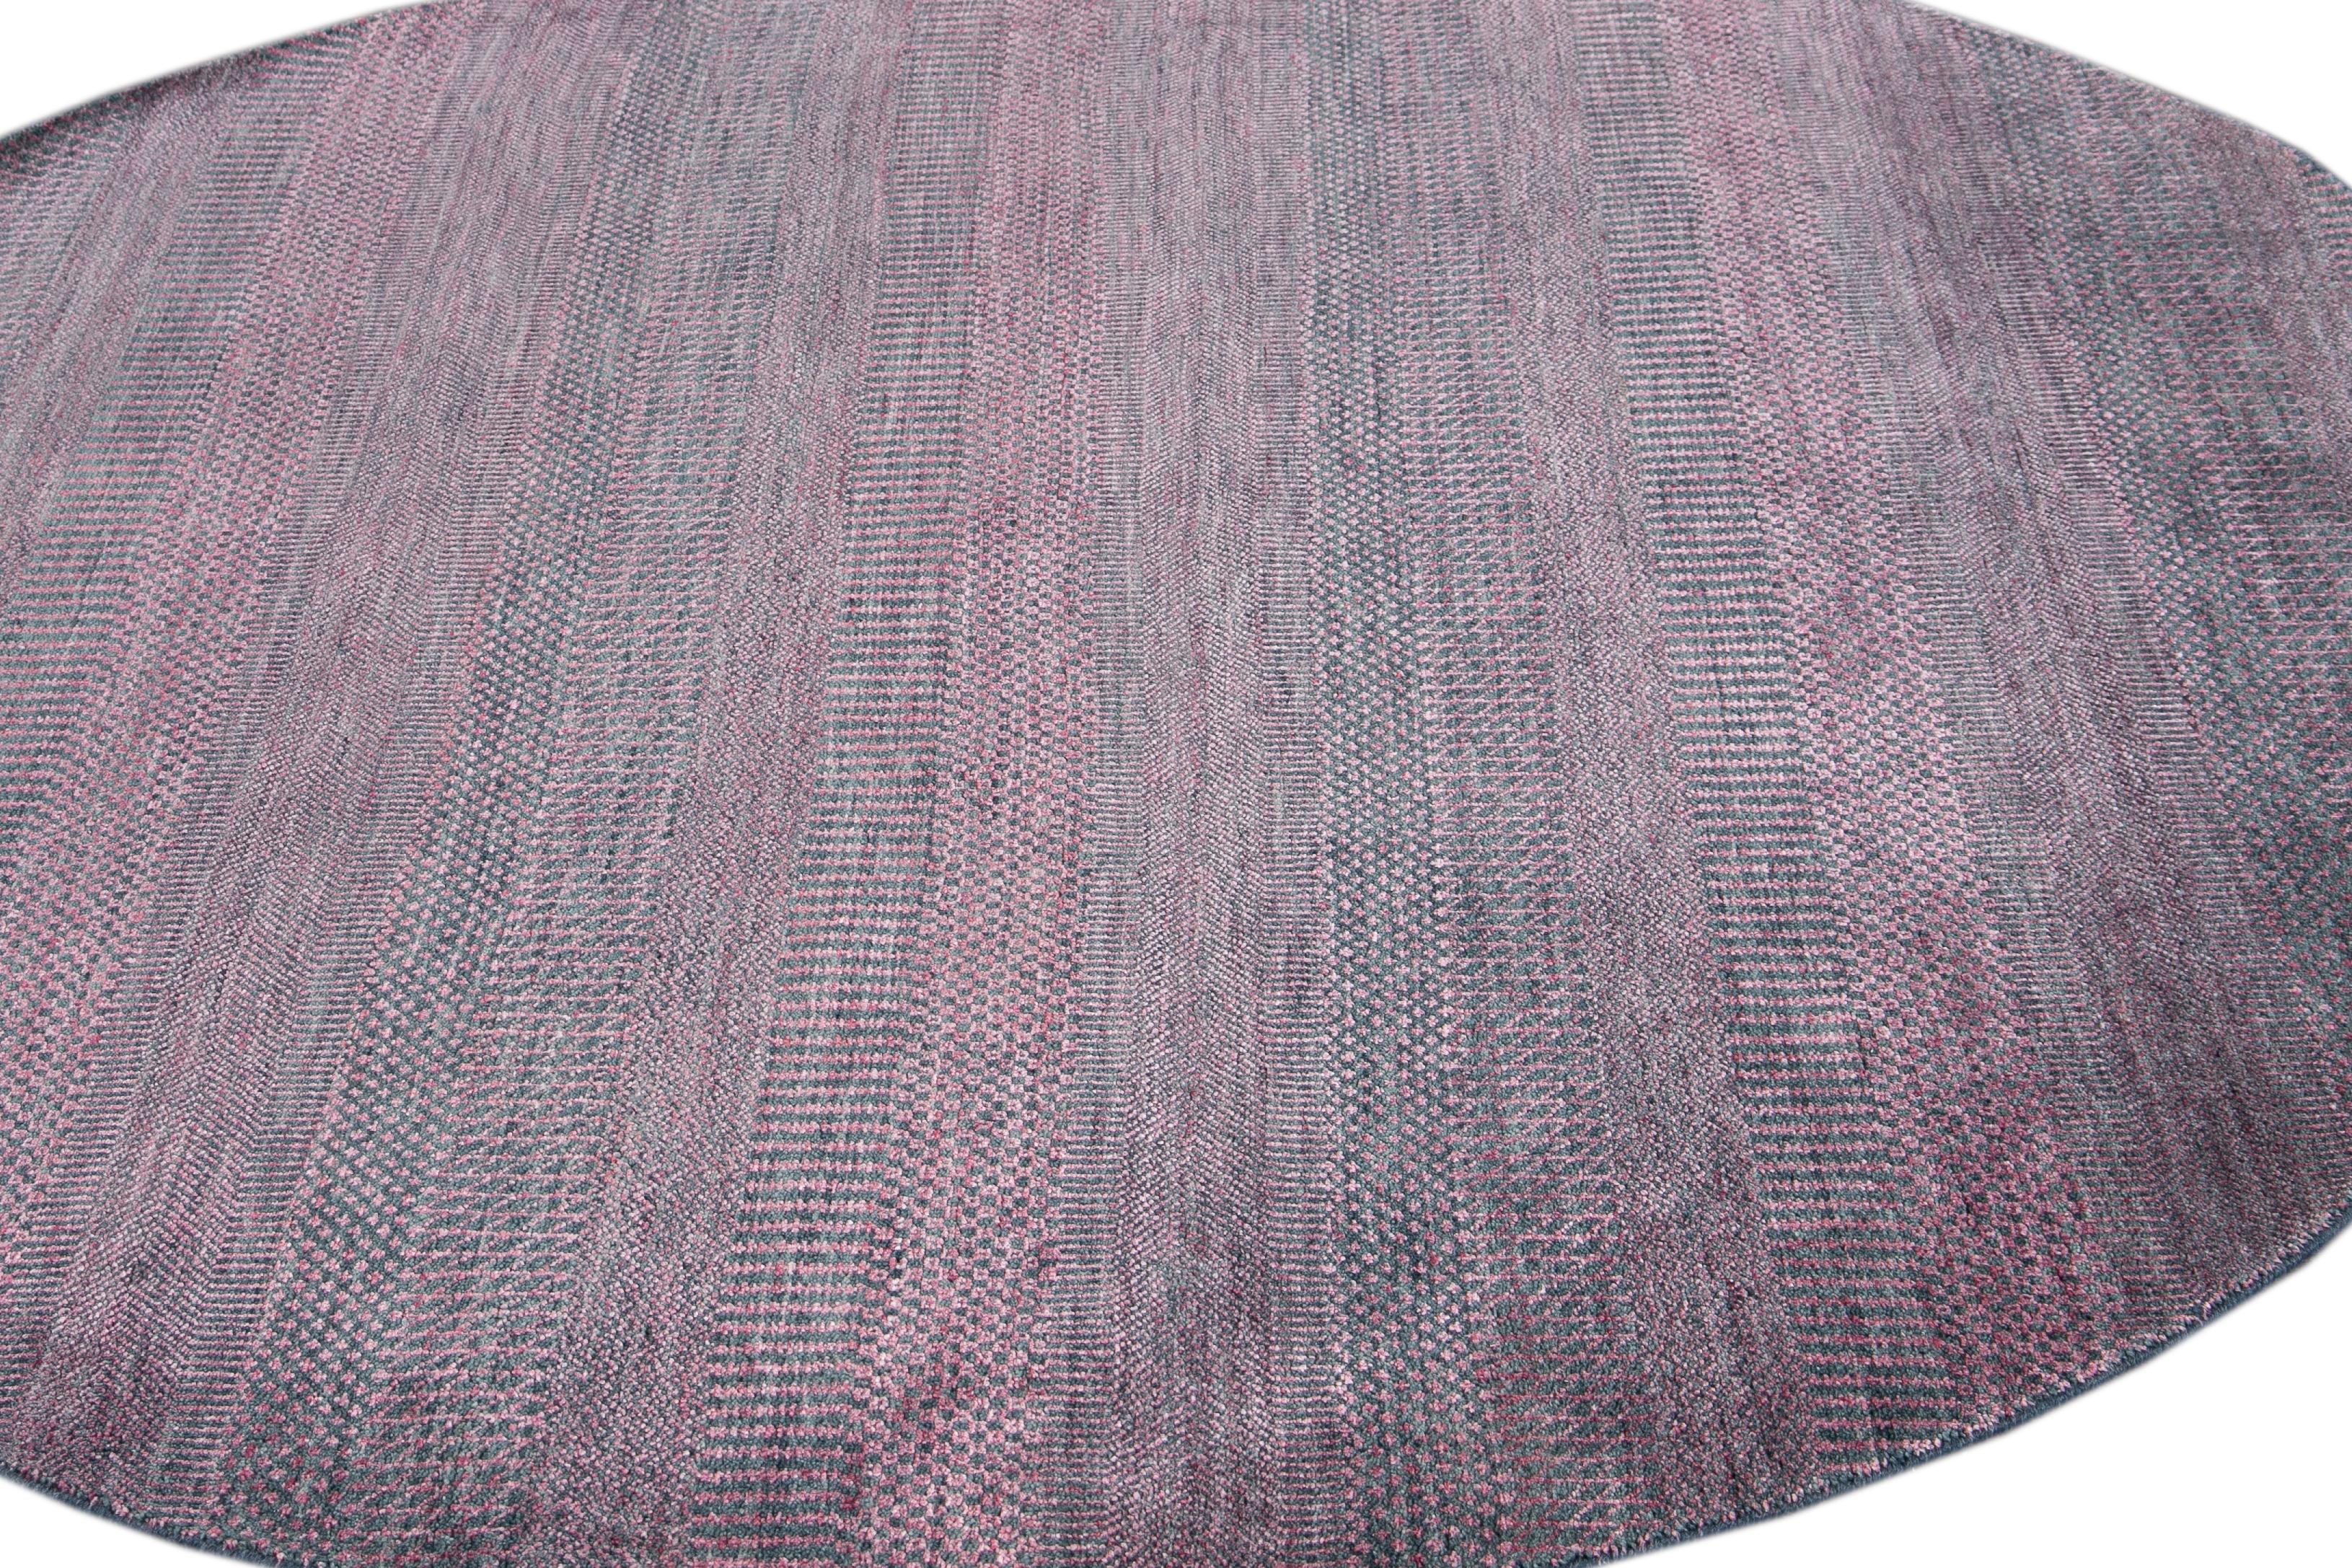 Magnifique tapis rond contemporain Savannah, en laine nouée à la main avec un champ rose, des accents bleus dans un design rayé all-over.
Ce tapis a un diamètre de 7' 0